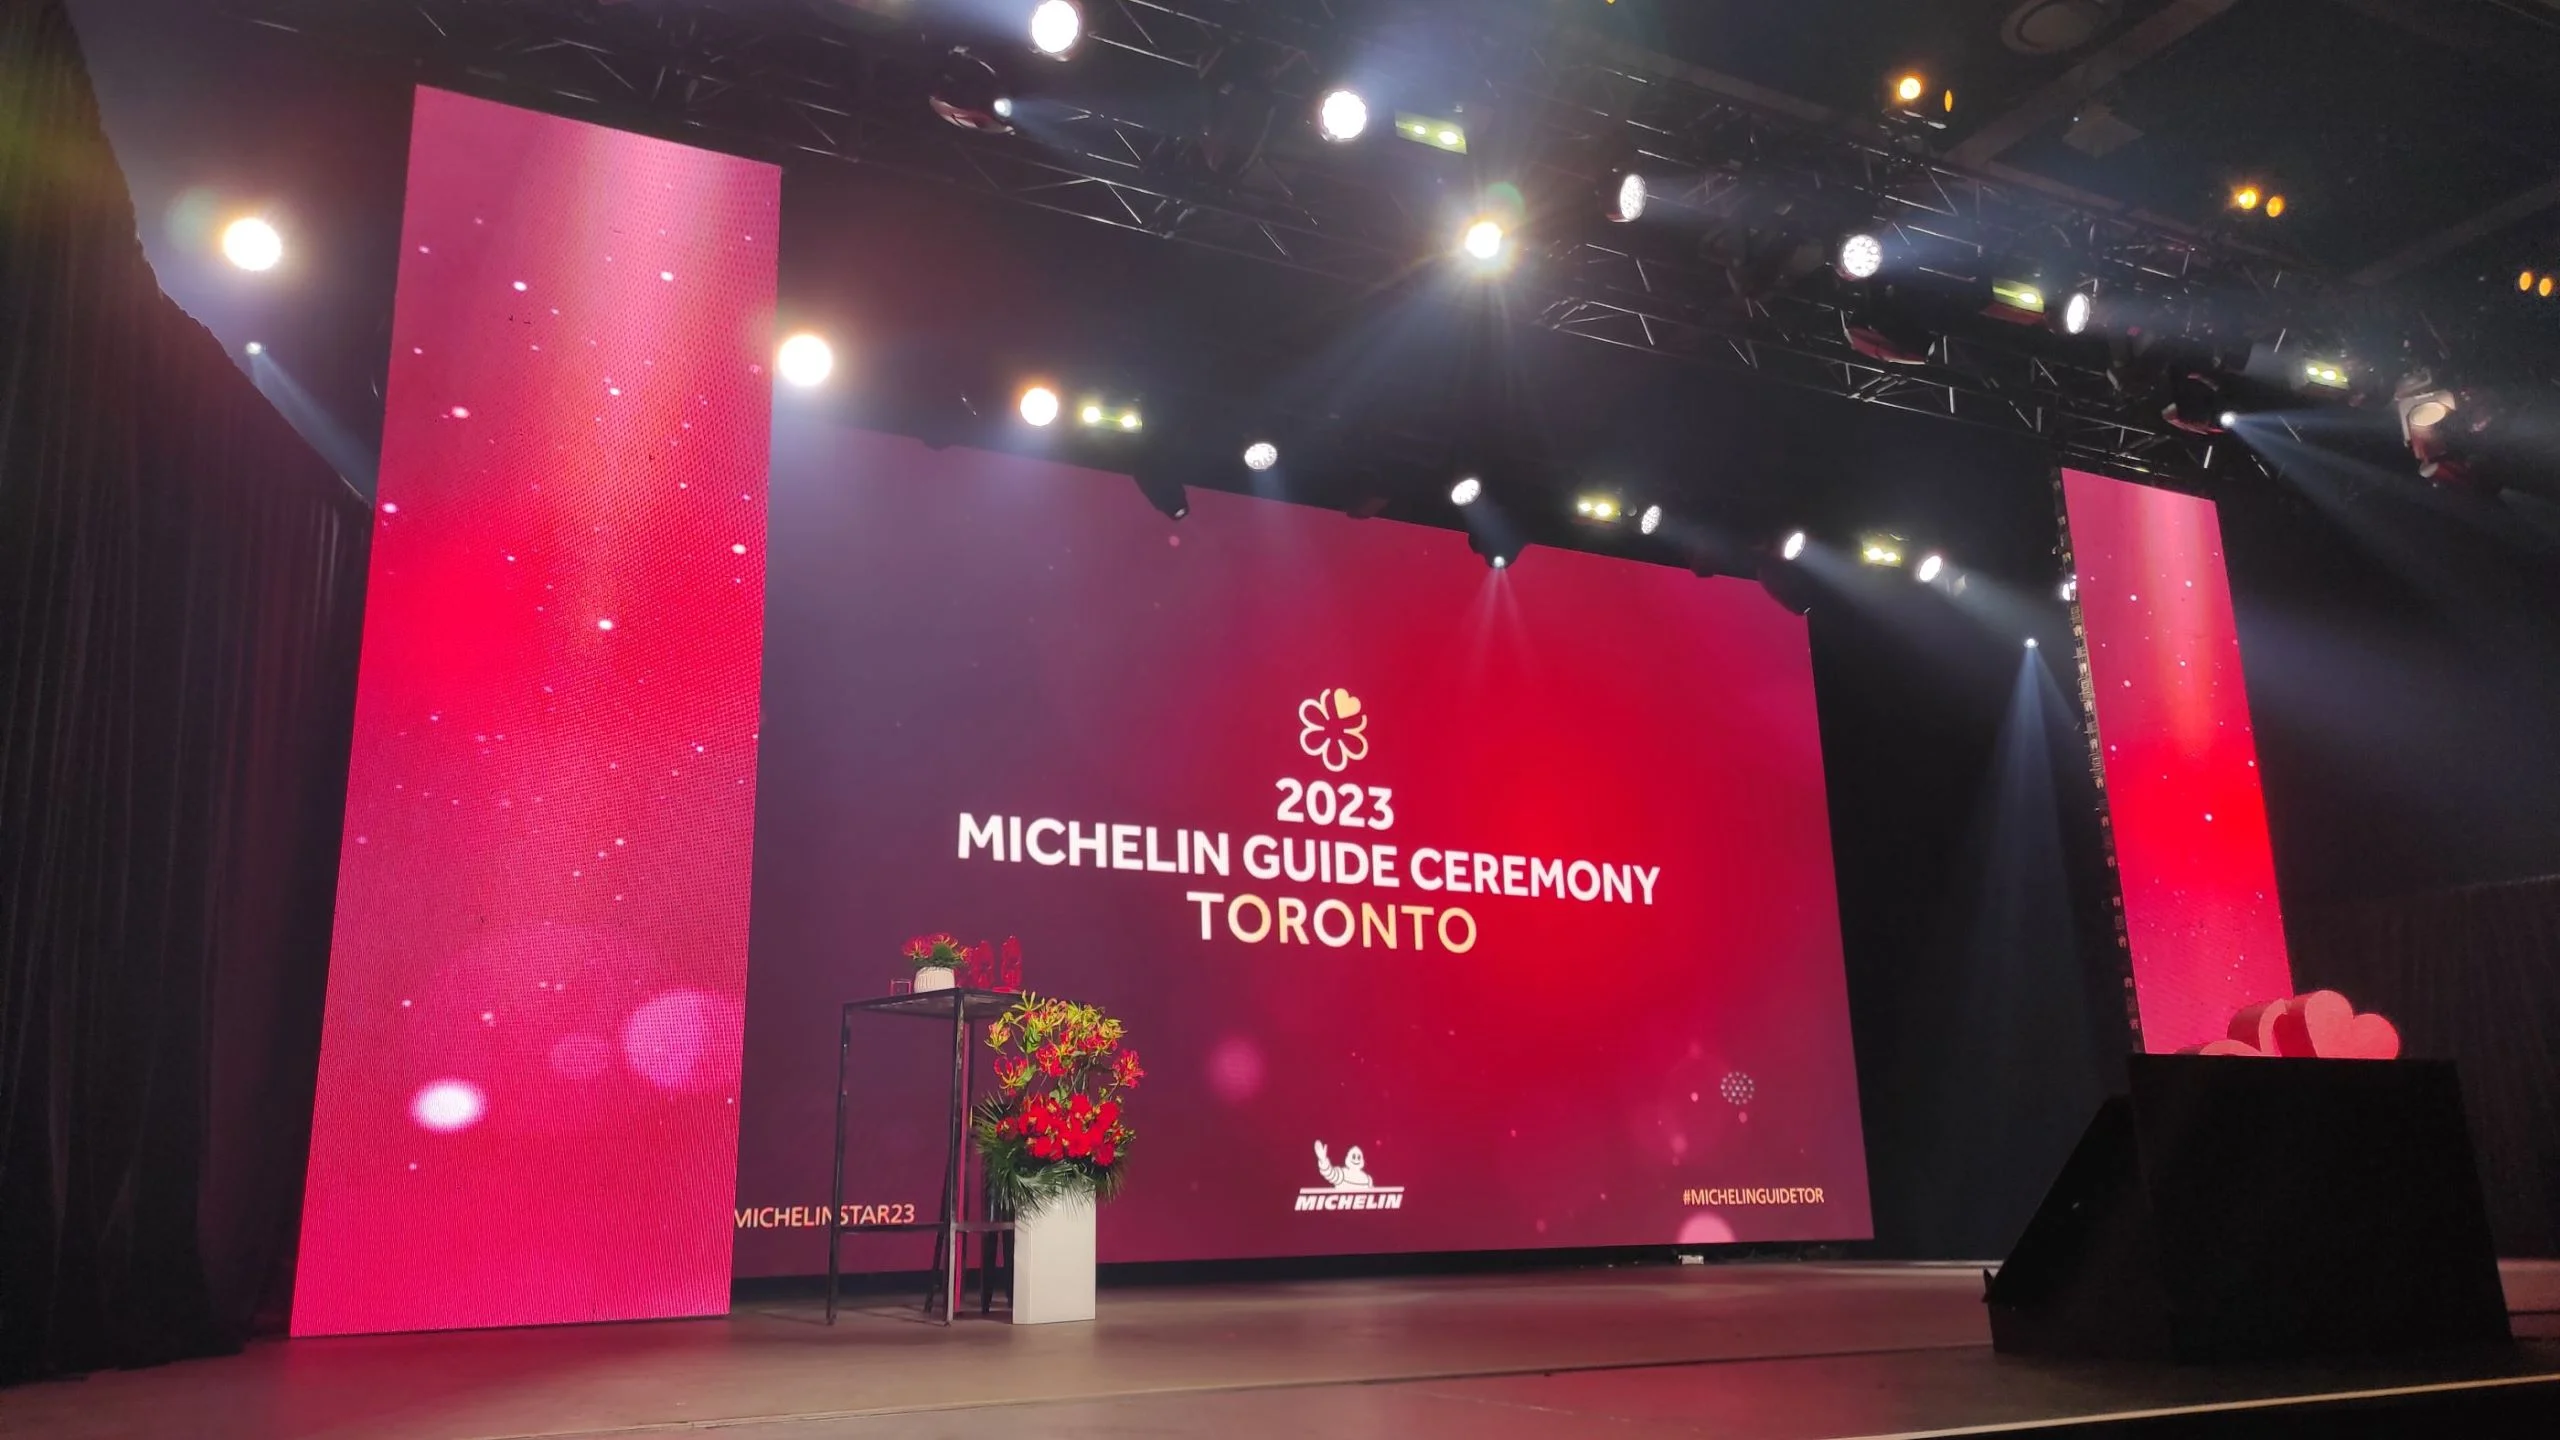 Así se vivió la ceremonia de la Guía Michelin 2023 en Toronto, Canadá